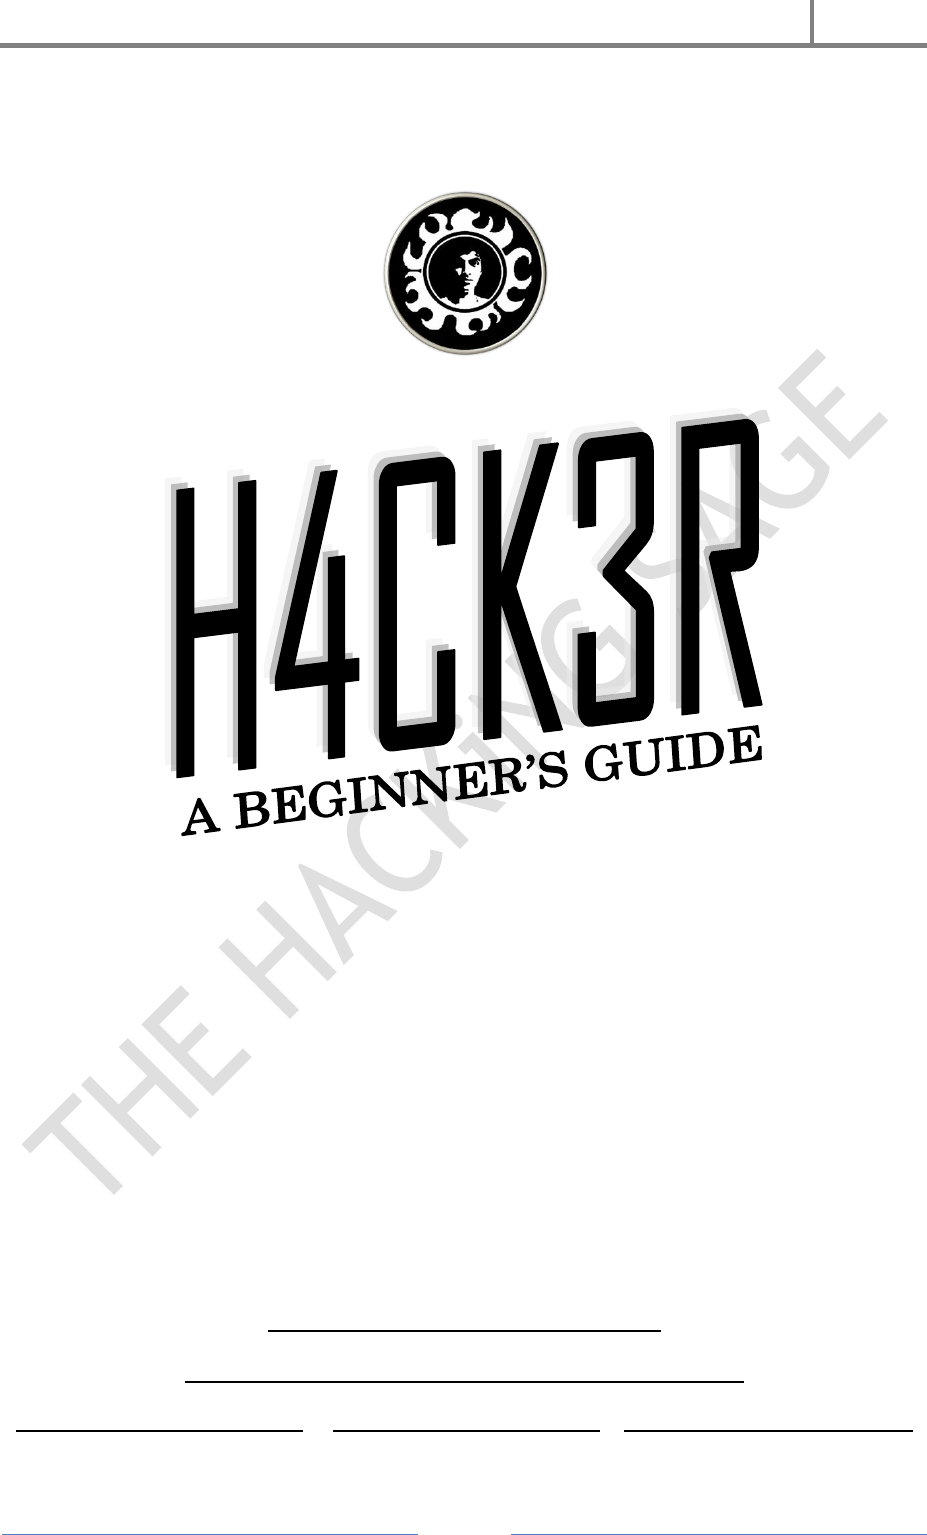 no skill delay hack ragnarok guide